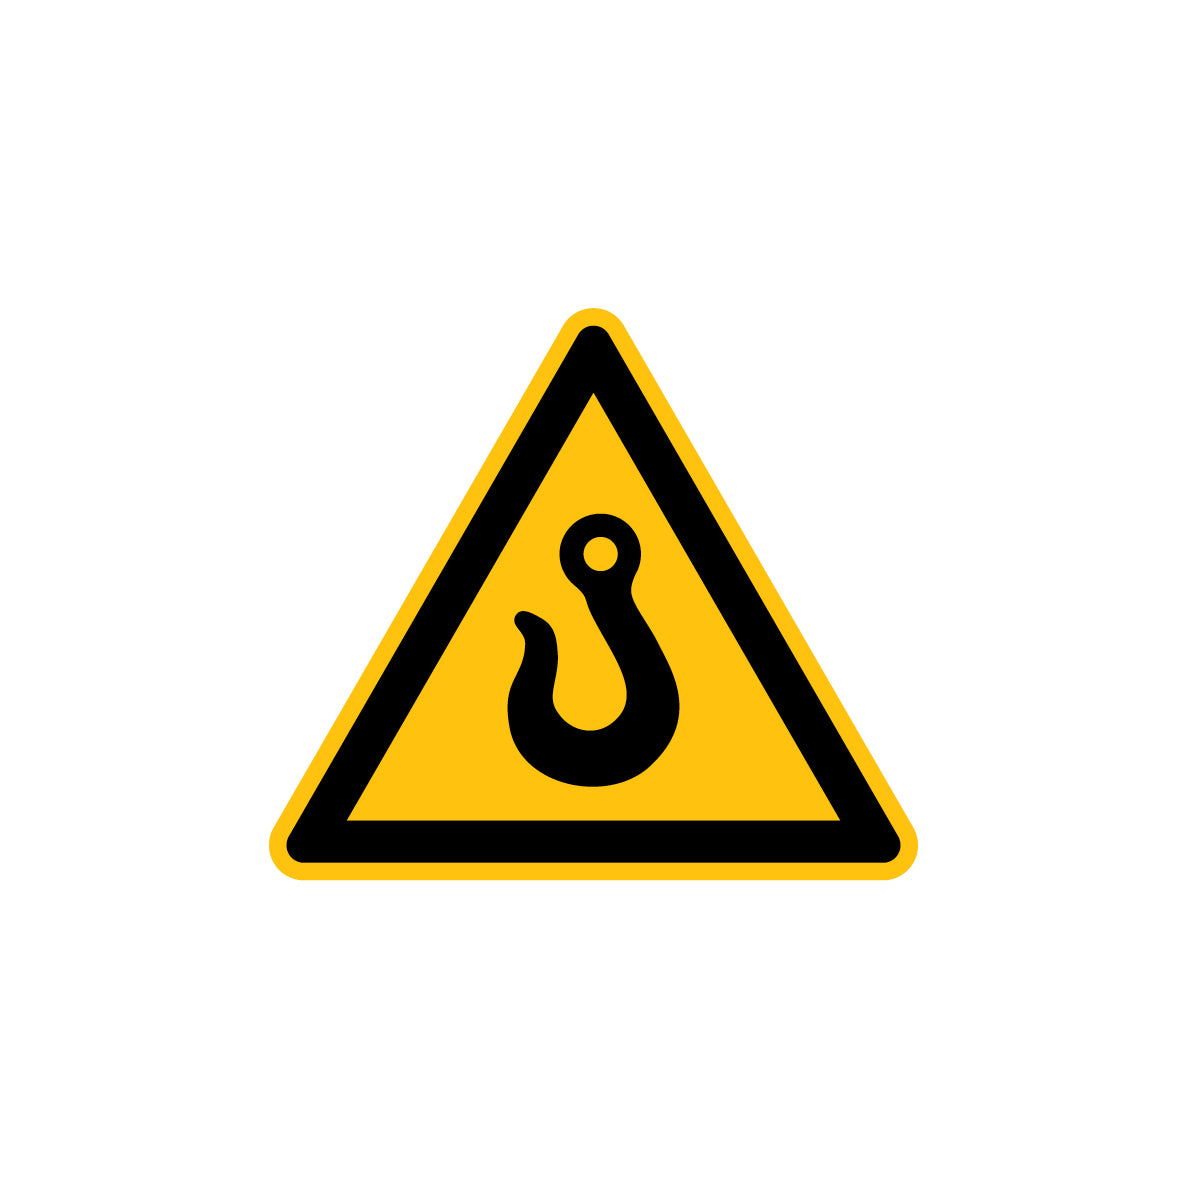 6.W-925 Warnung vor Kranhaken, Warnzeichen, Praxisbewährt